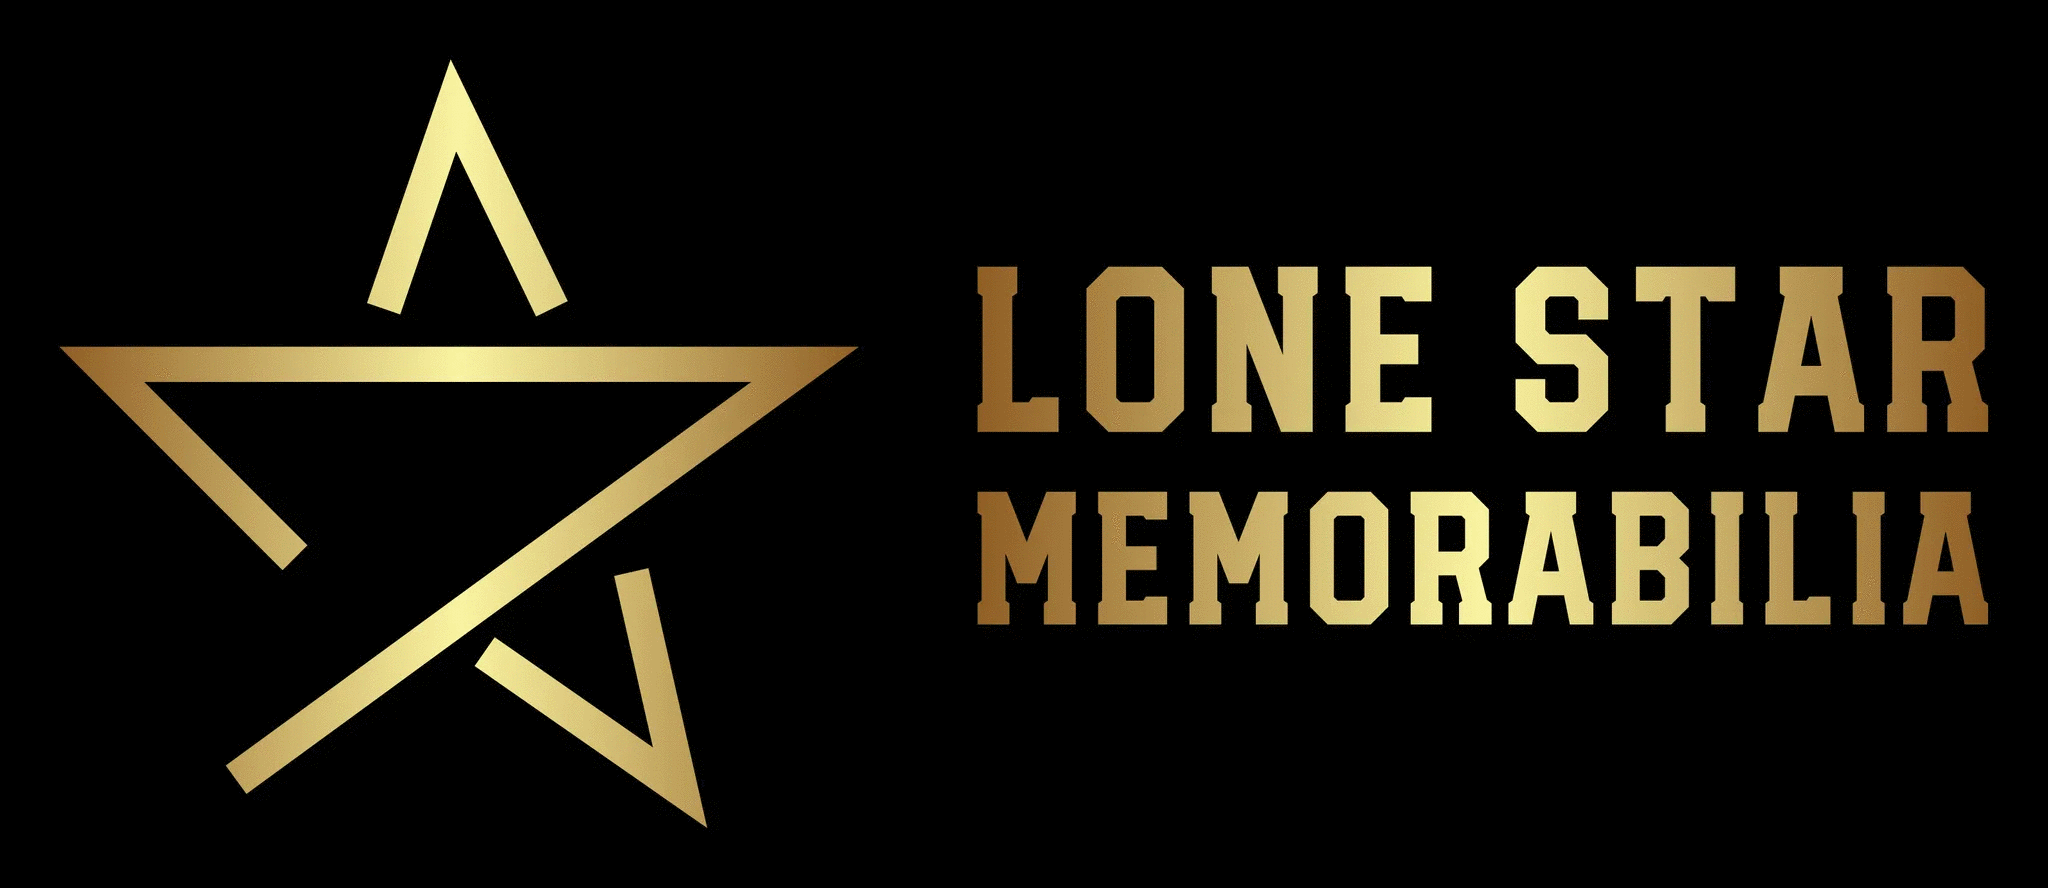 Lone Star Memorabilia Corp